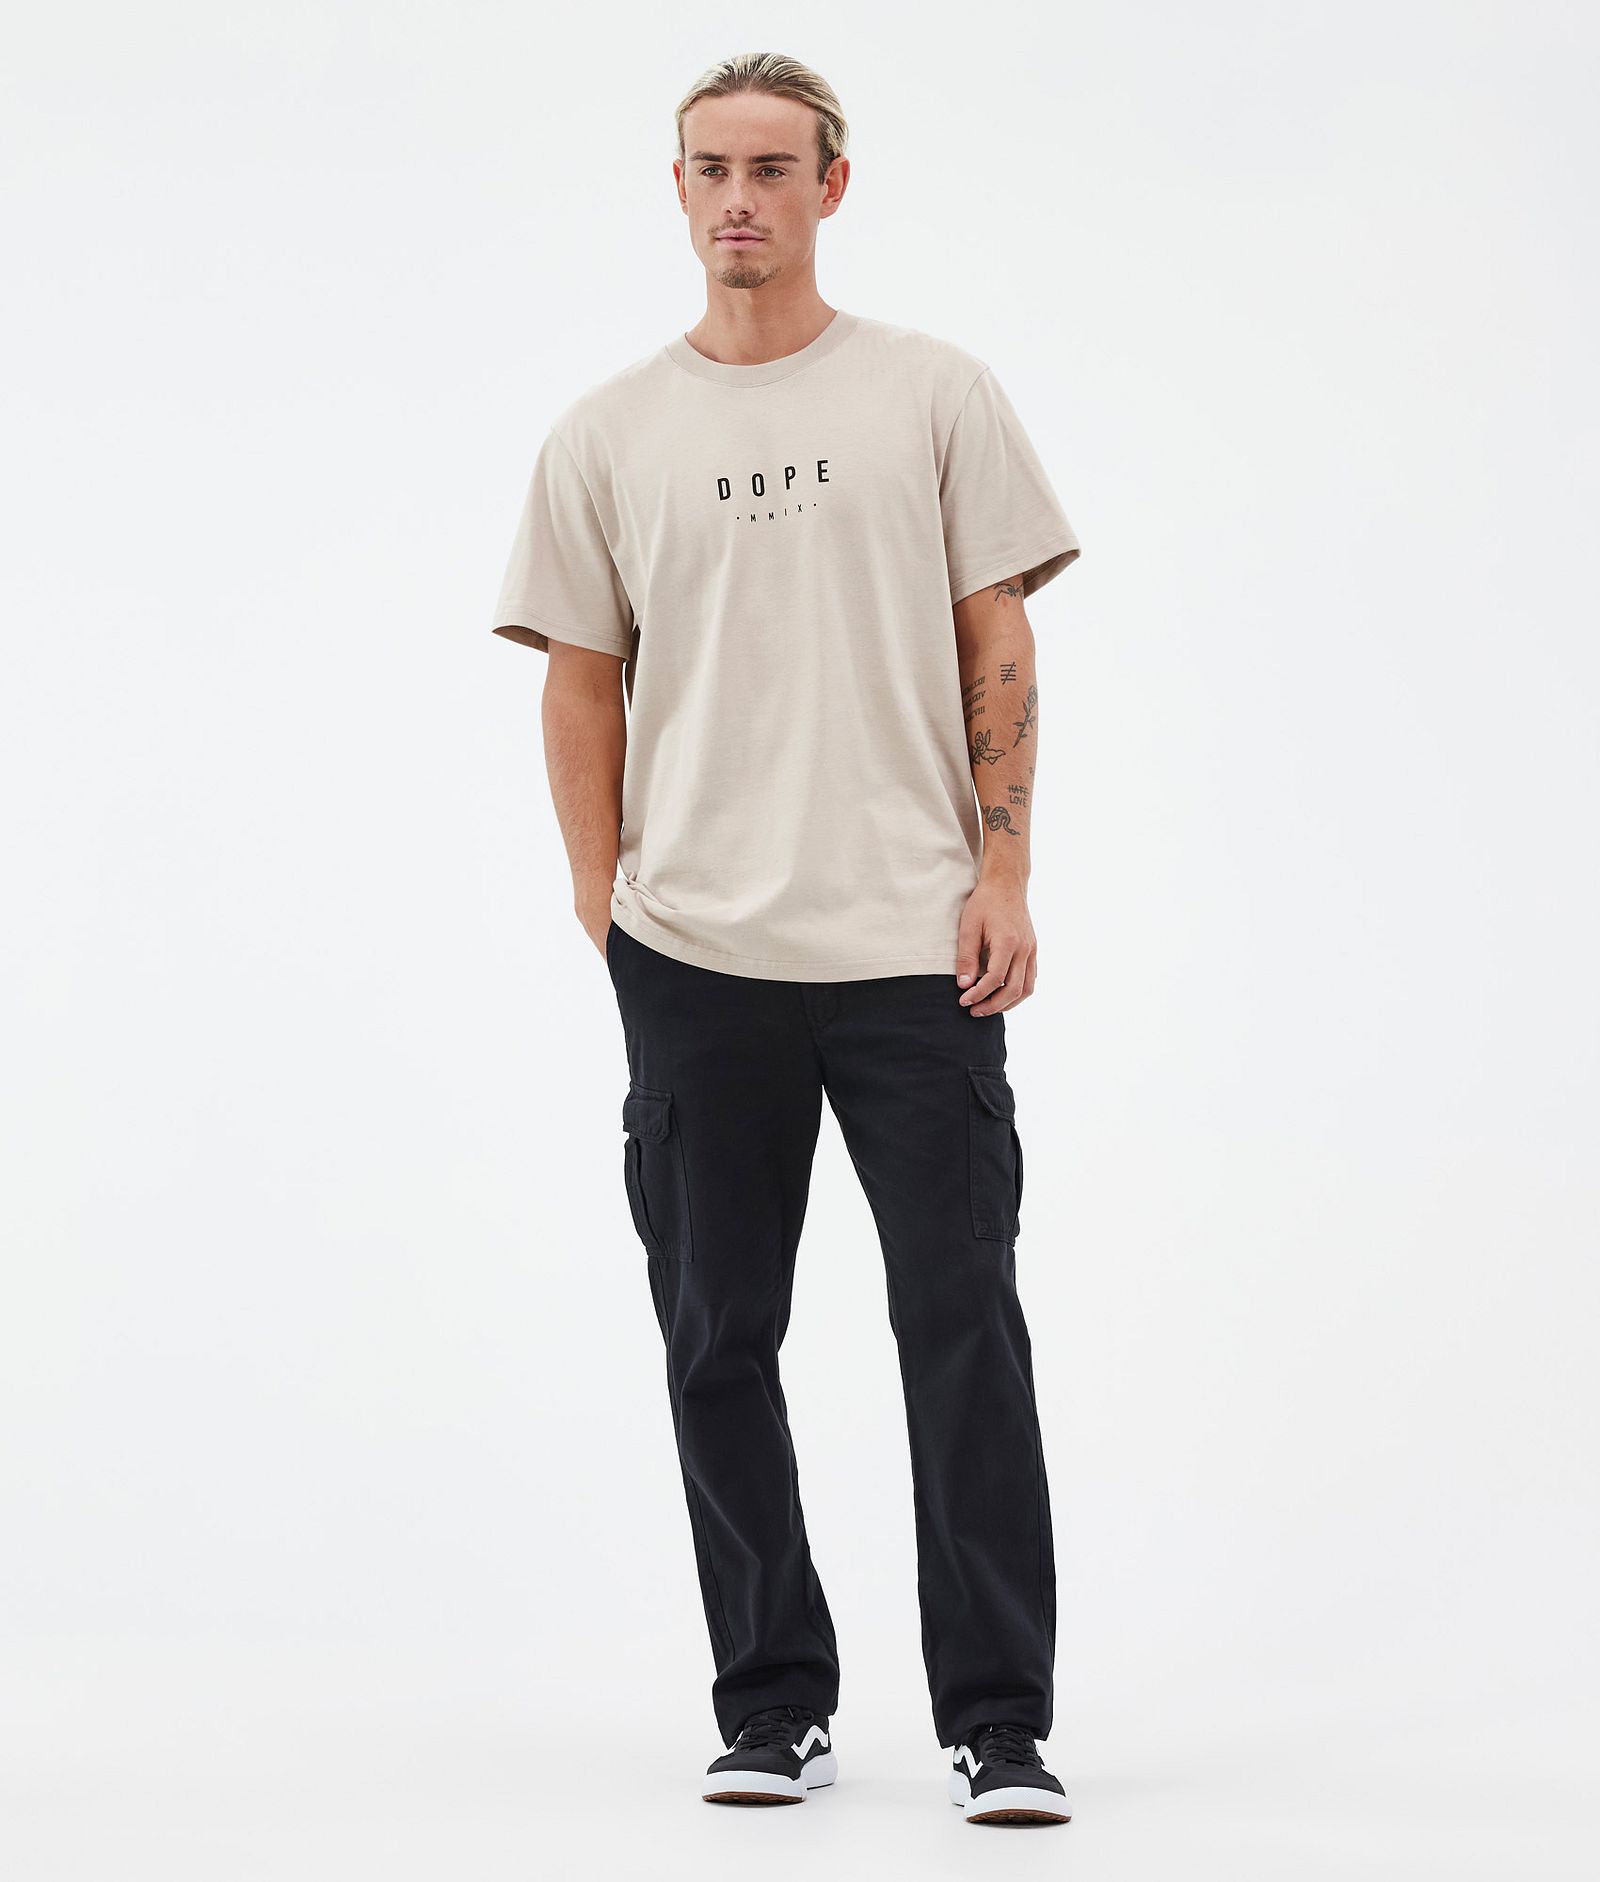 Standard T-Shirt Herren Aphex Sand